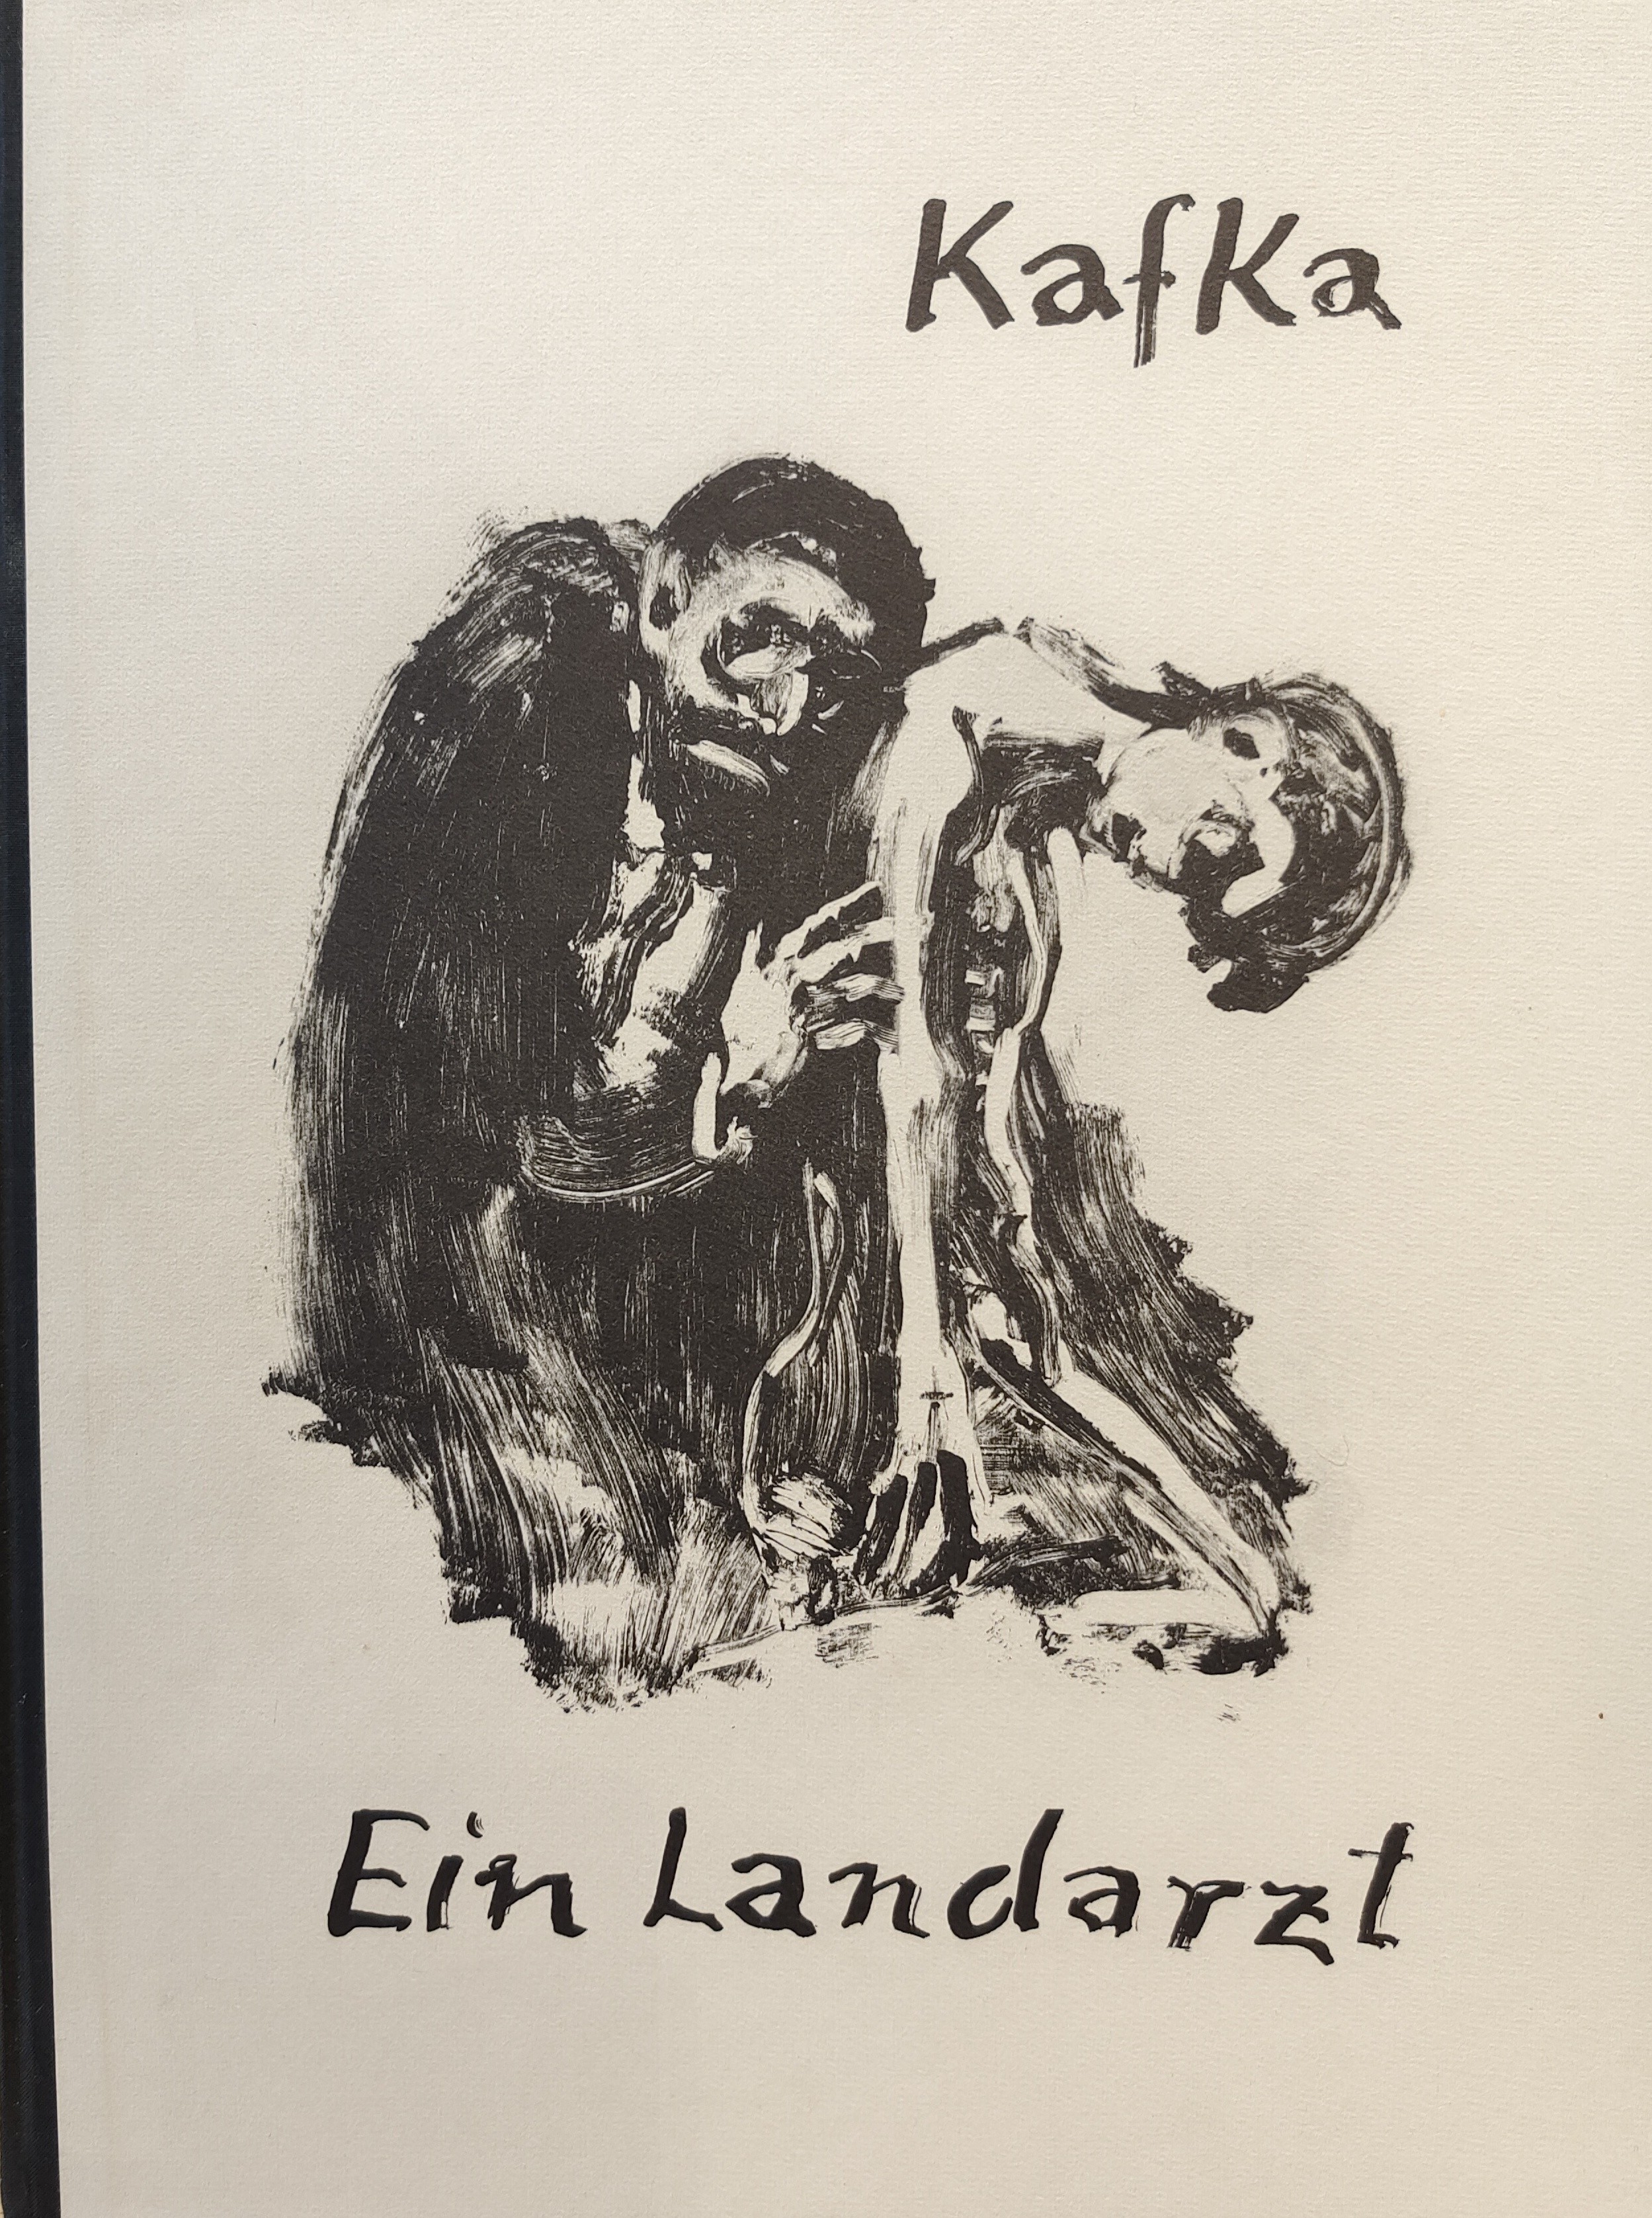 Fronius  "Kafka, Ein Landarzt mit 3 originalen Holzschnitten"